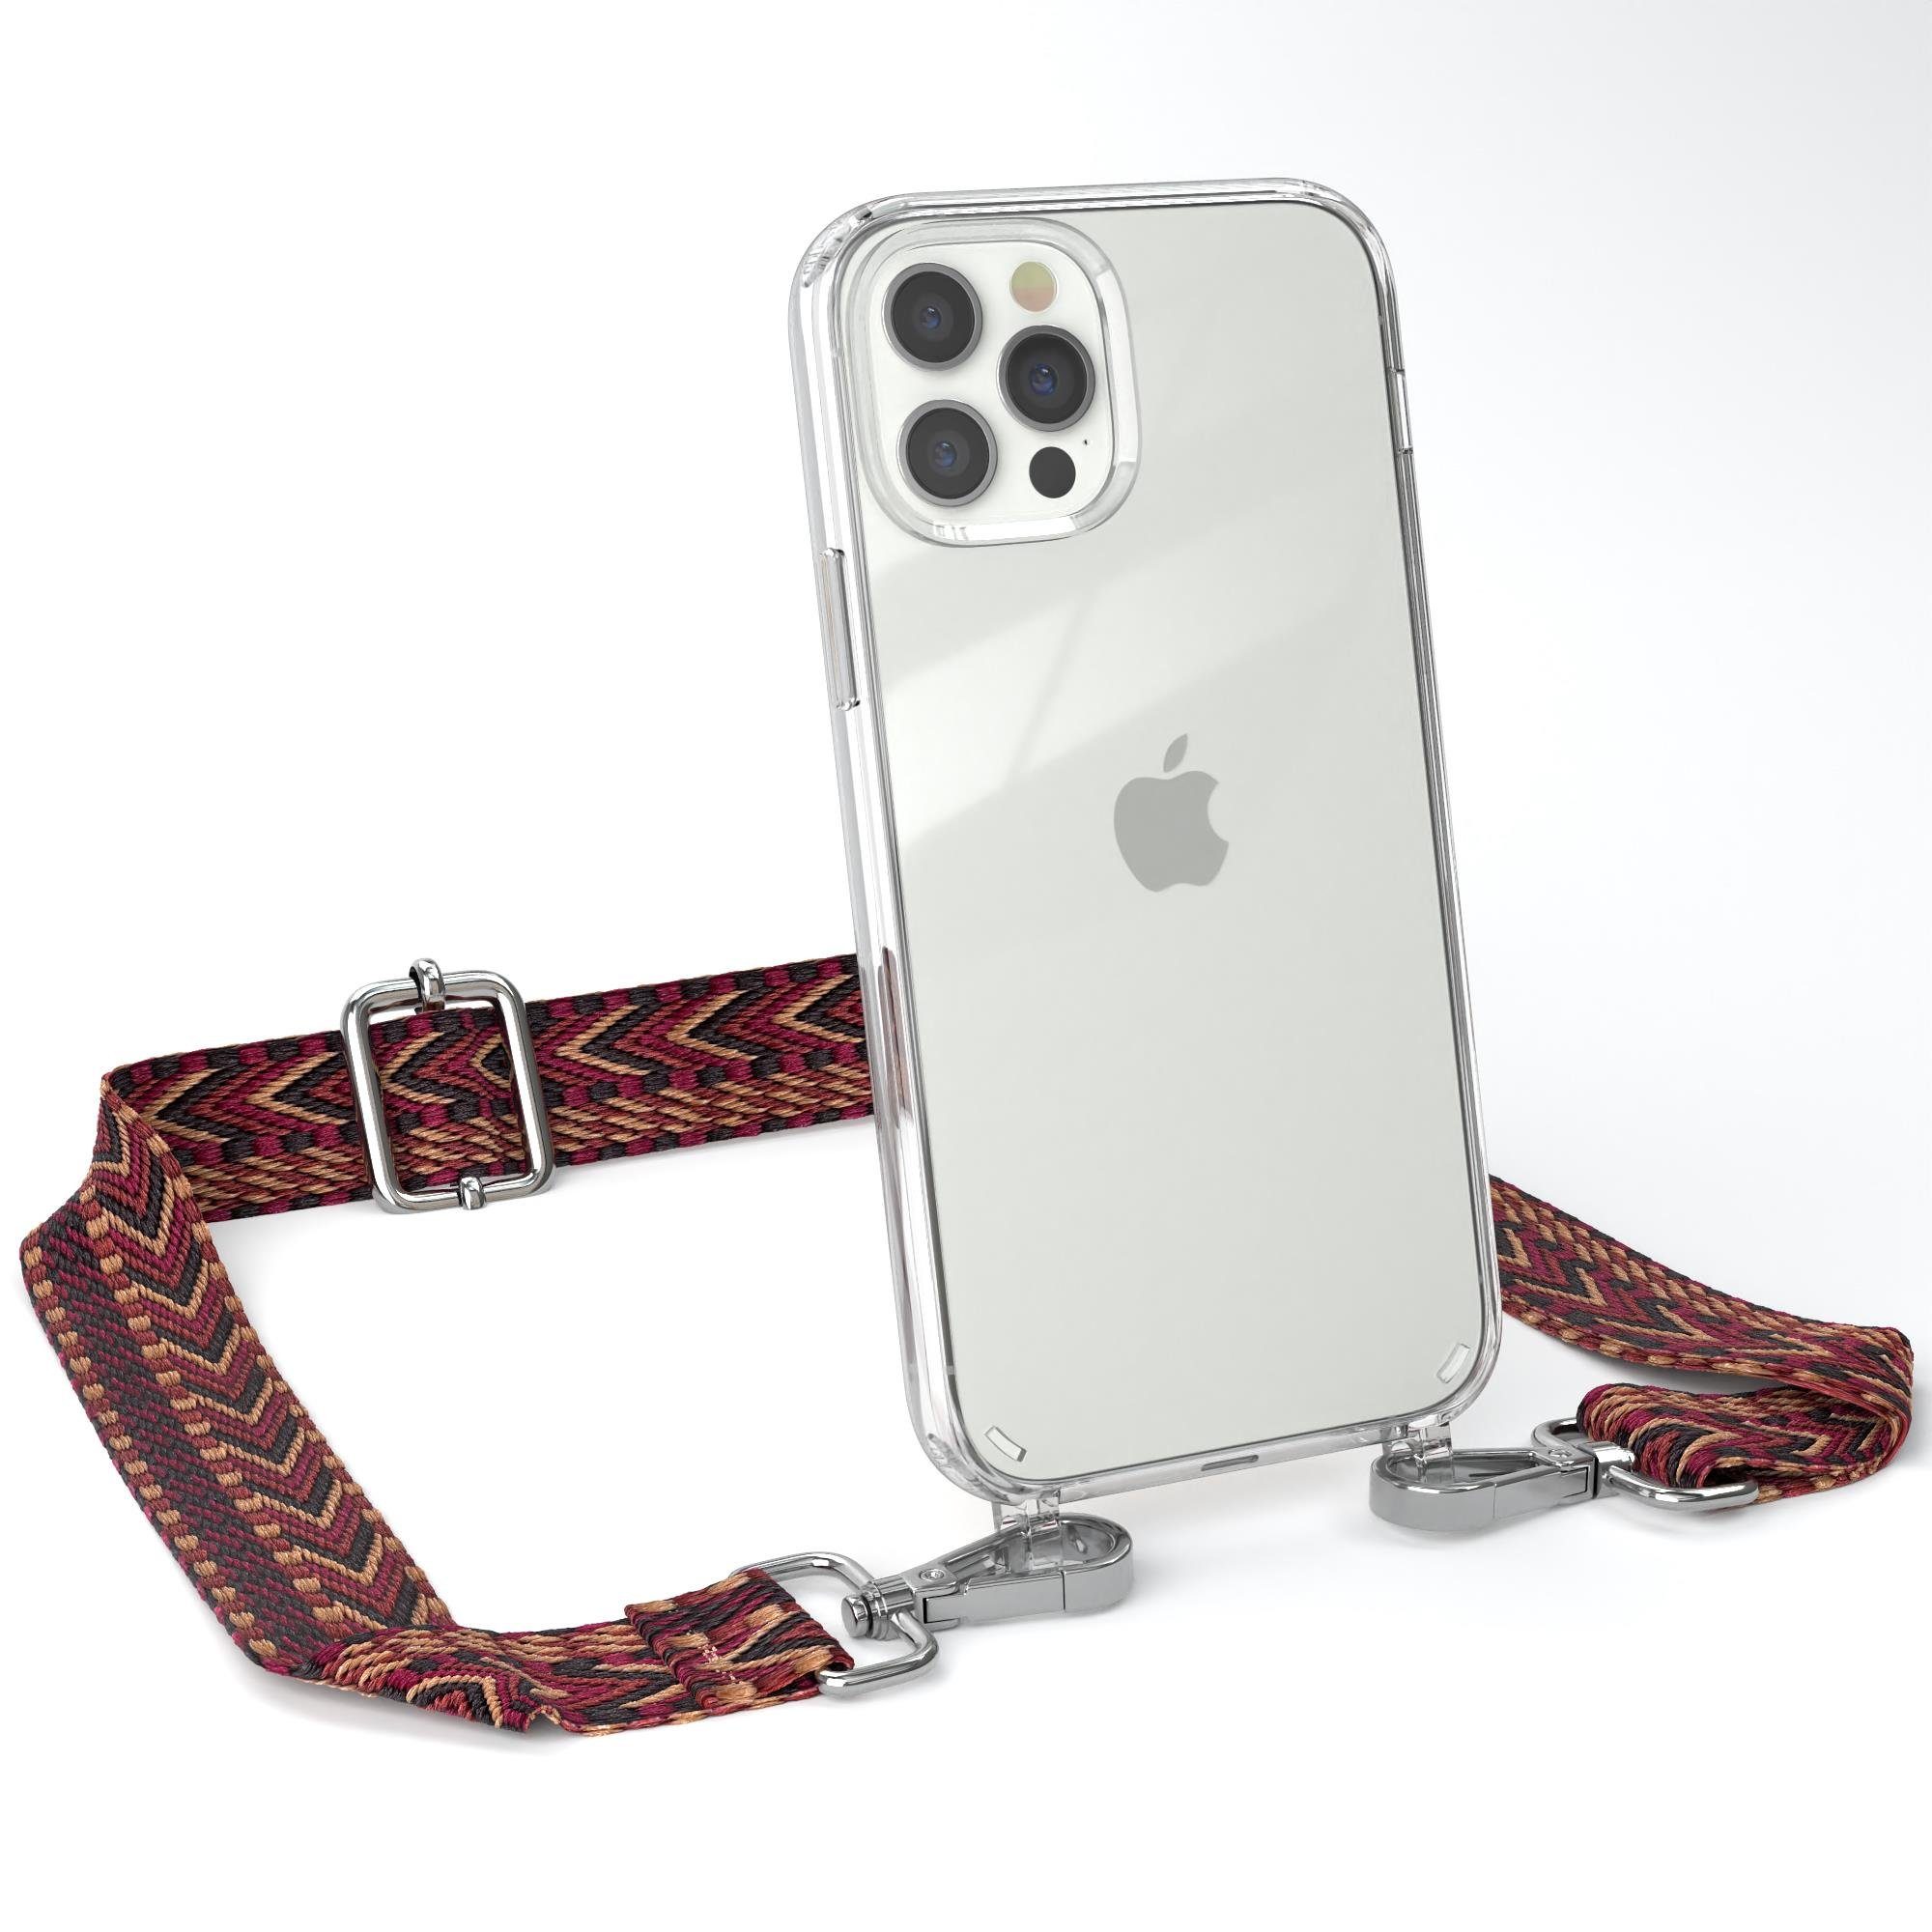 EAZY CASE Handykette Boho Umhängeband für iPhone 12 / iPhone 12 Pro 6,1 Zoll, dünner Riemen Silikon Hülle zum Umhängen Umhängetasche schmal Etui Rot